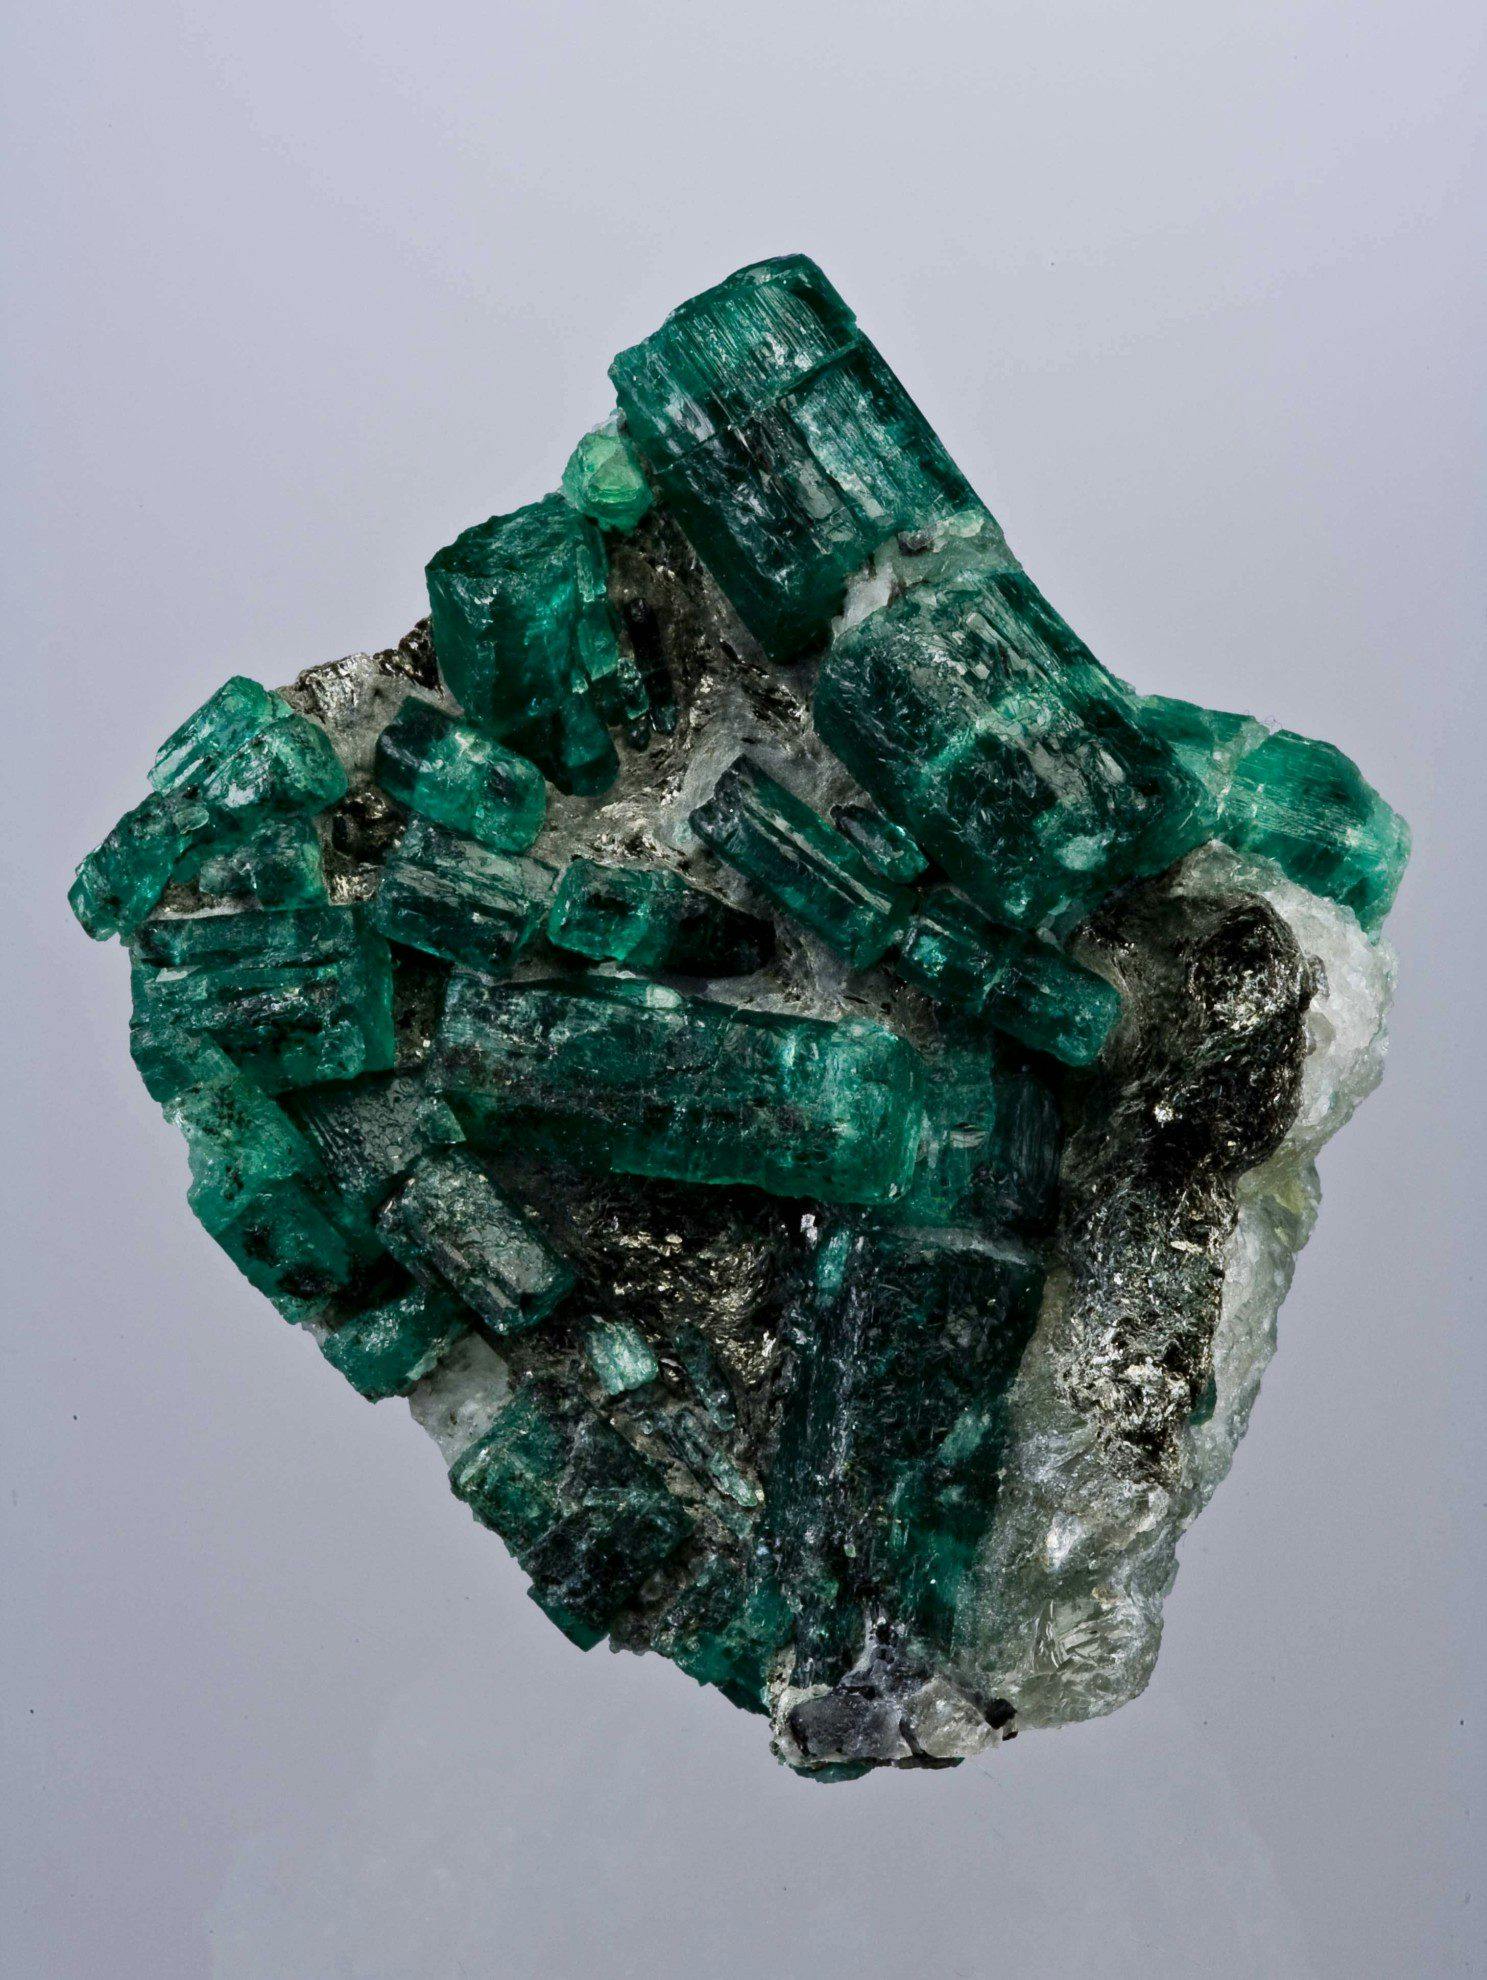 Zambian emeralds